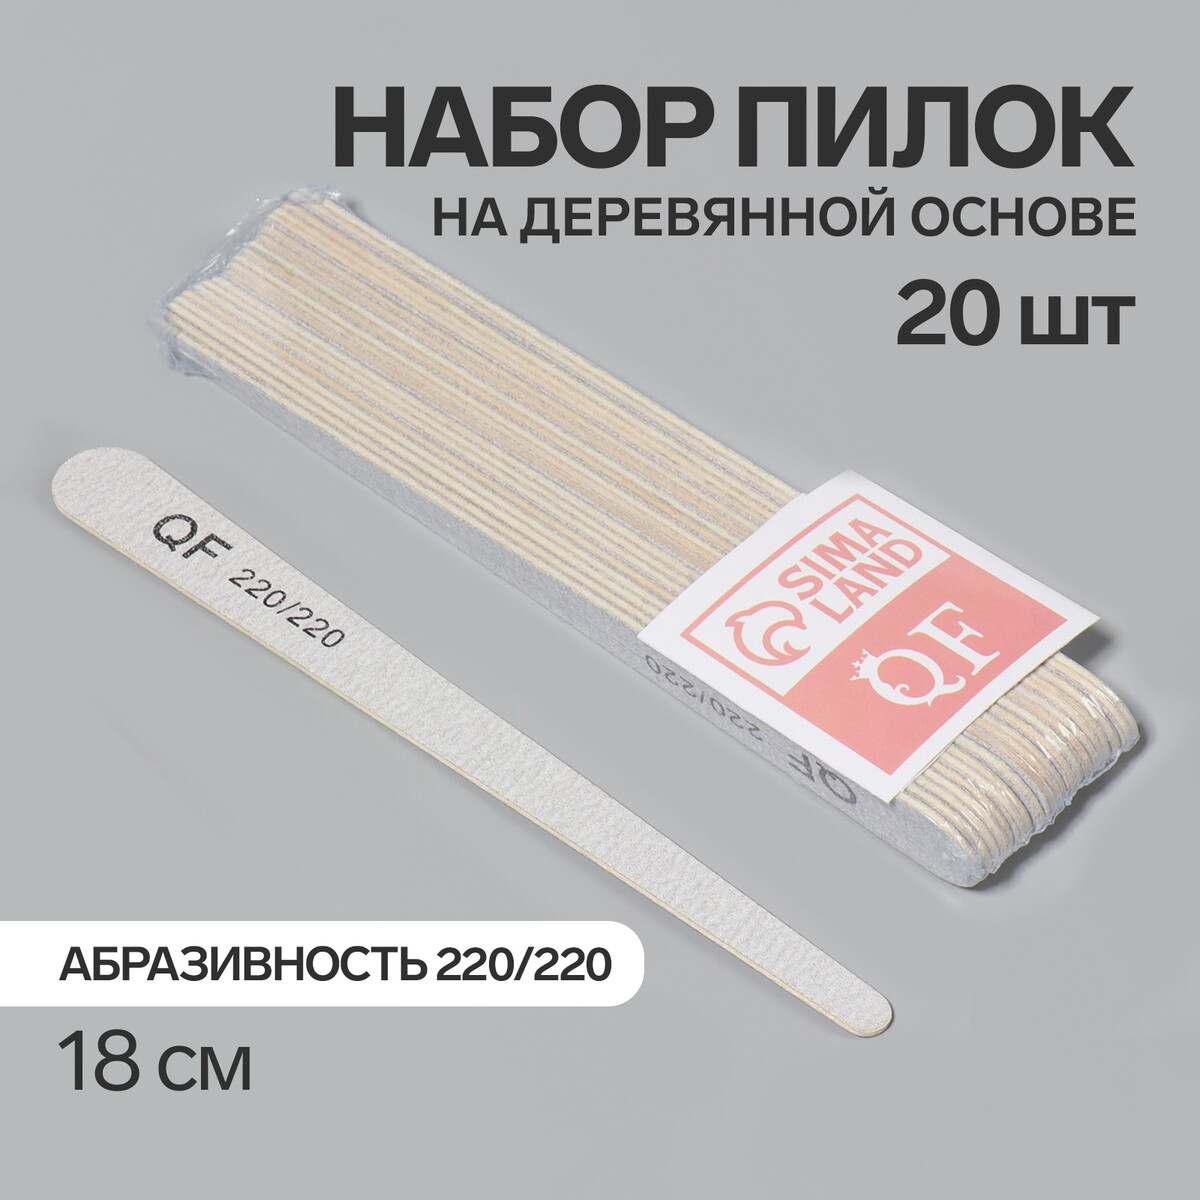 Пилка-наждак, набор 20 шт, деревянная основа, абразивность 220/220, 18 см, цвет серый палка основа для макраме деревянная без покрытия d 2 2 × 20 см